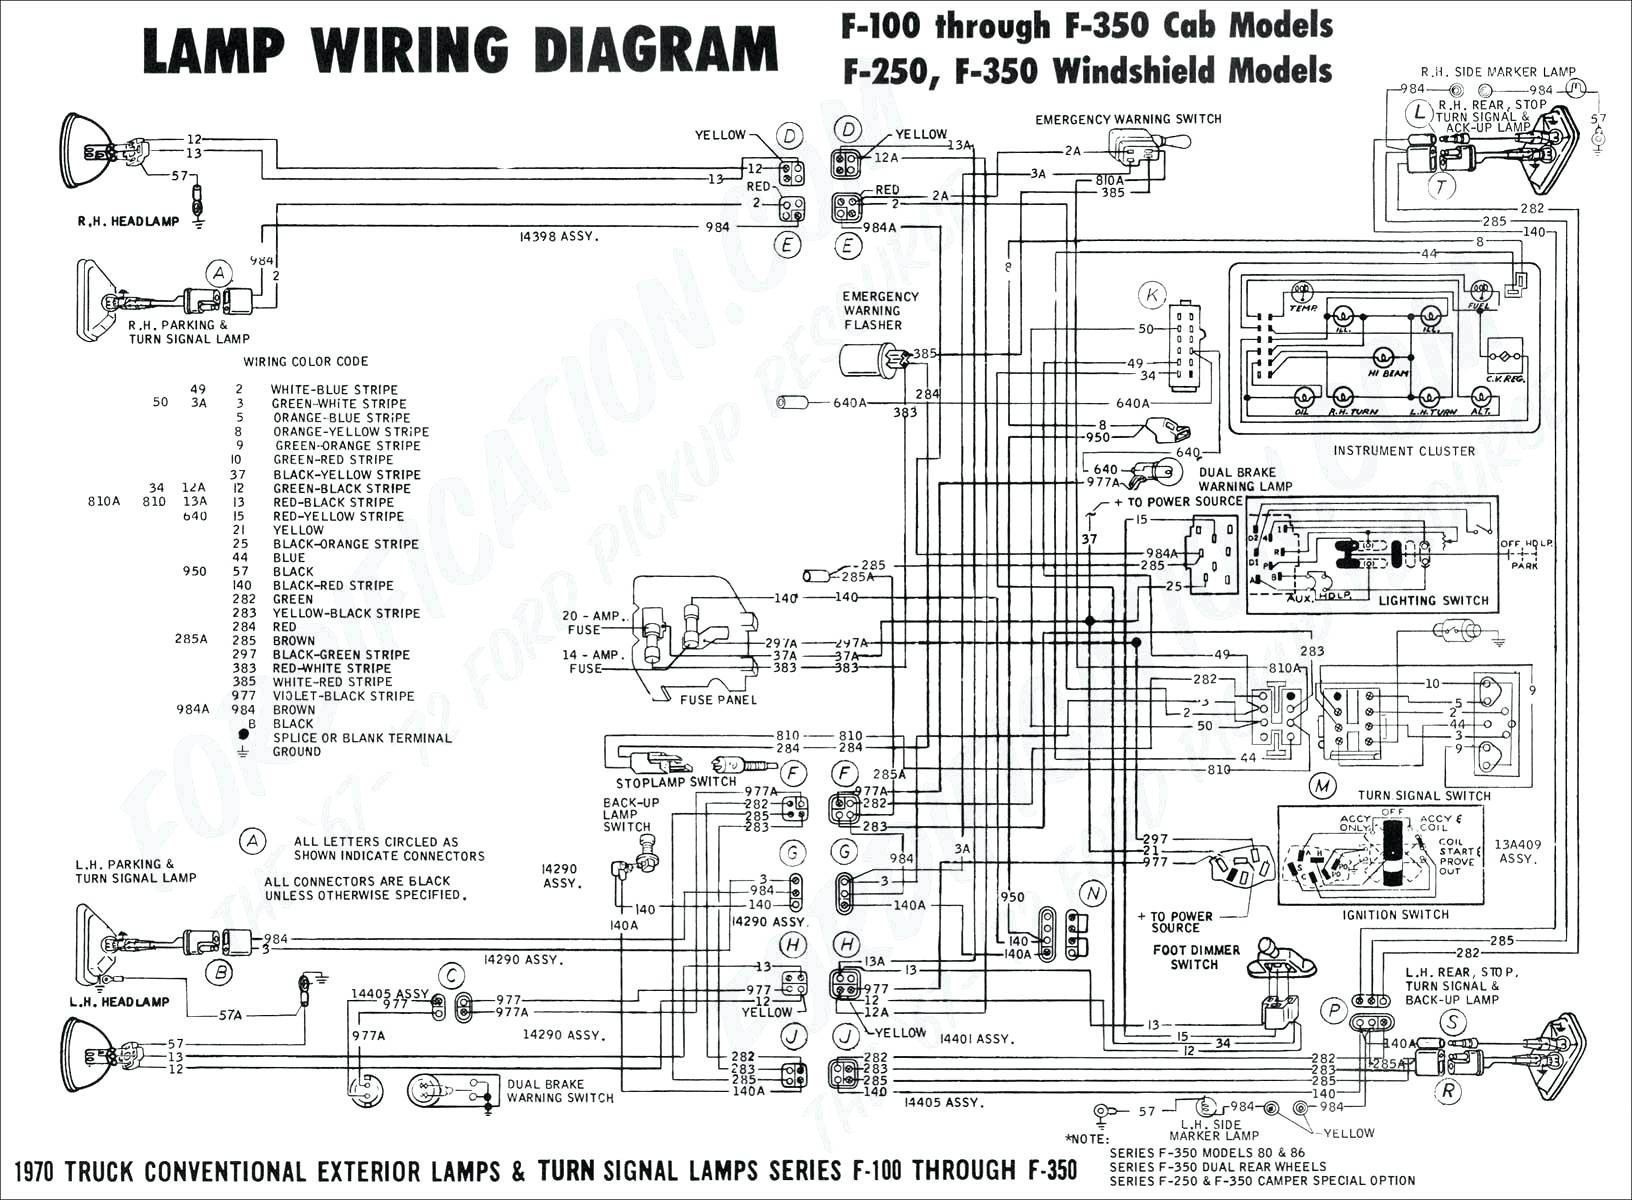 heartland rv wiring diagram Download Heartland Rv Wiring Diagram Awesome Wiring Diagram Rv Wiringrams Heartland DOWNLOAD Wiring Diagram